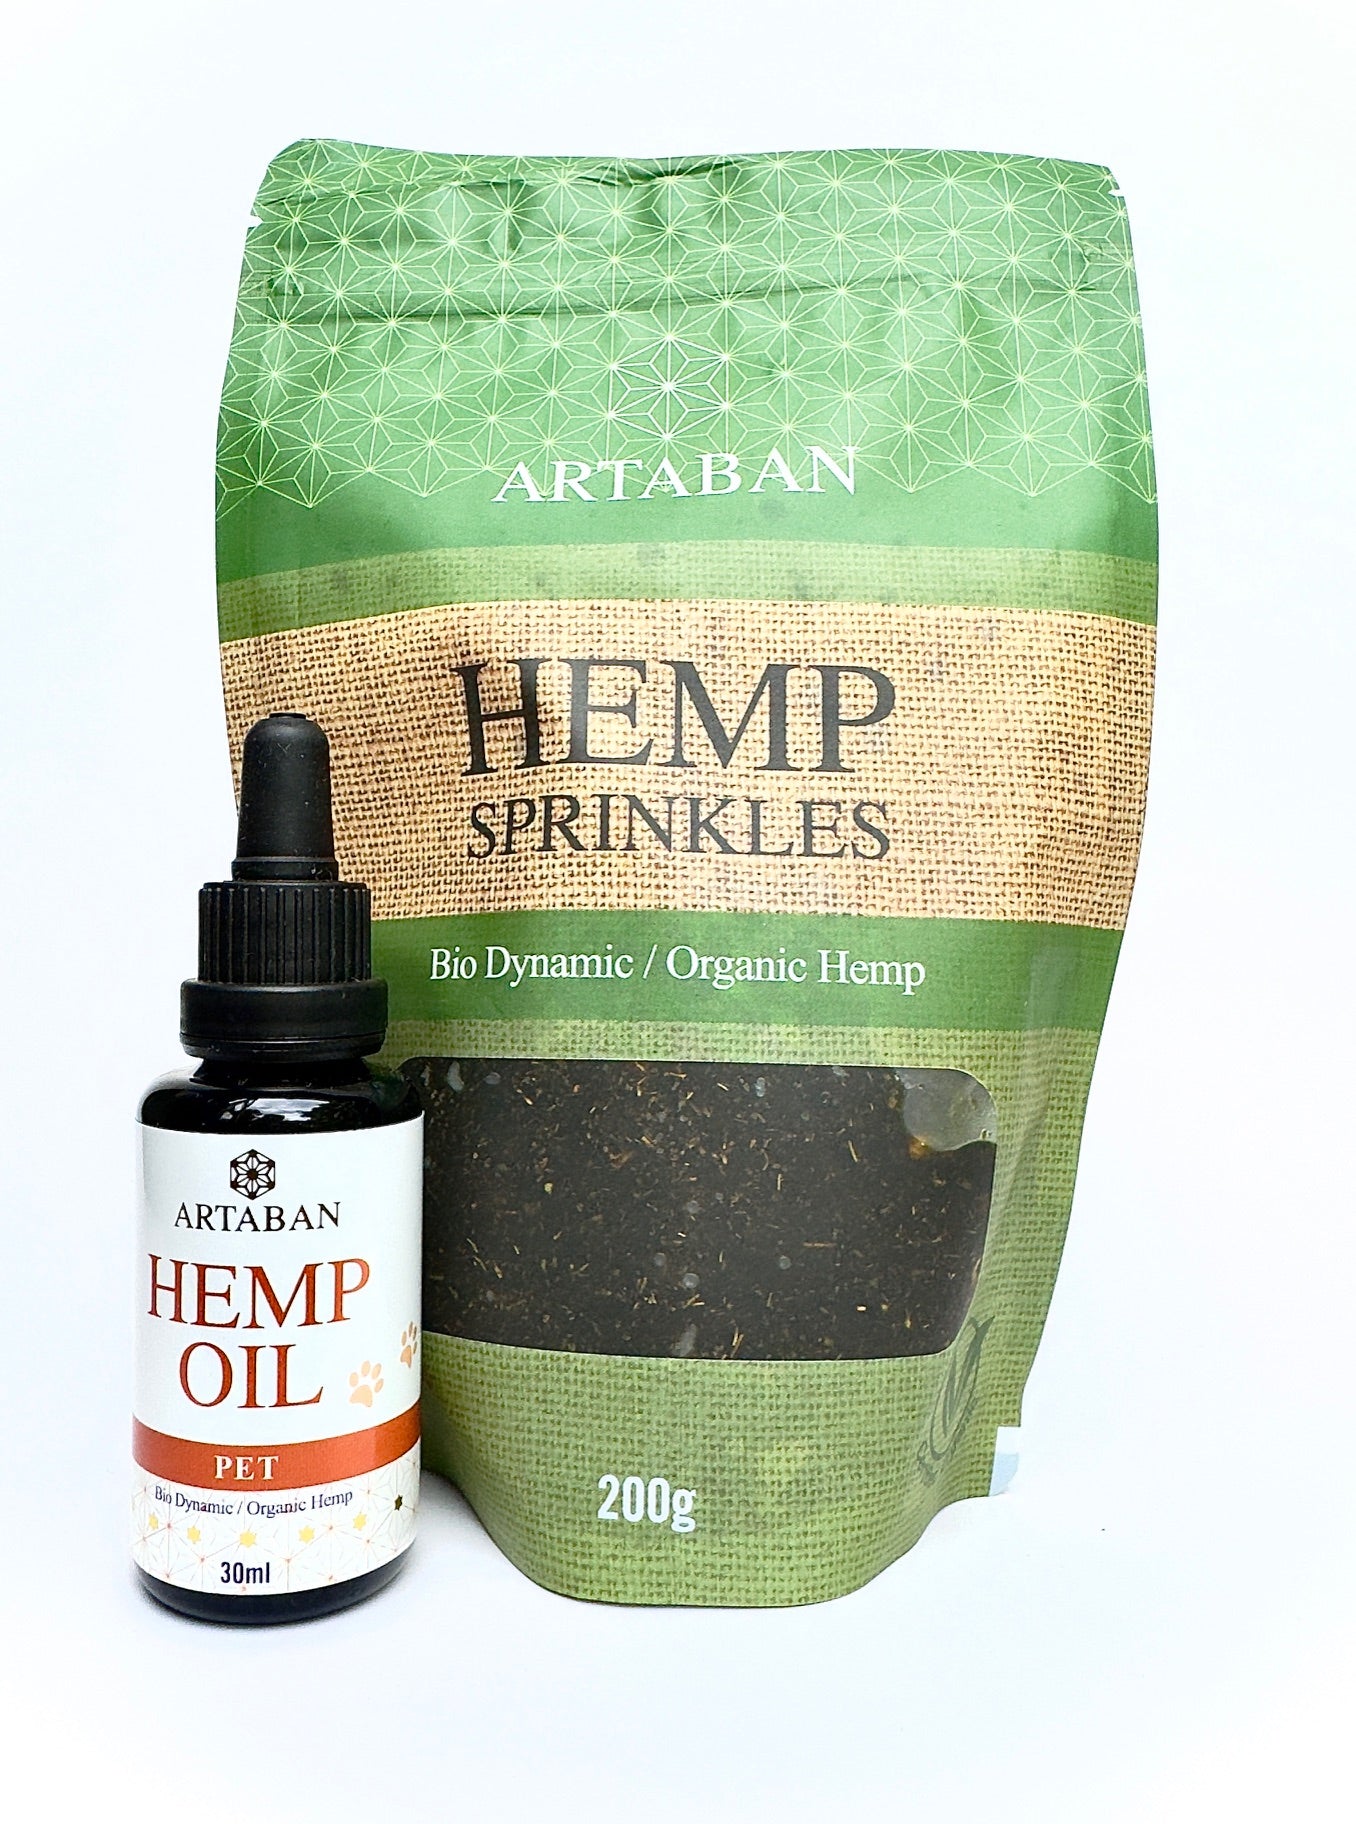 ARTABAN Hemp Oil & Sprinkles - Pet Pack